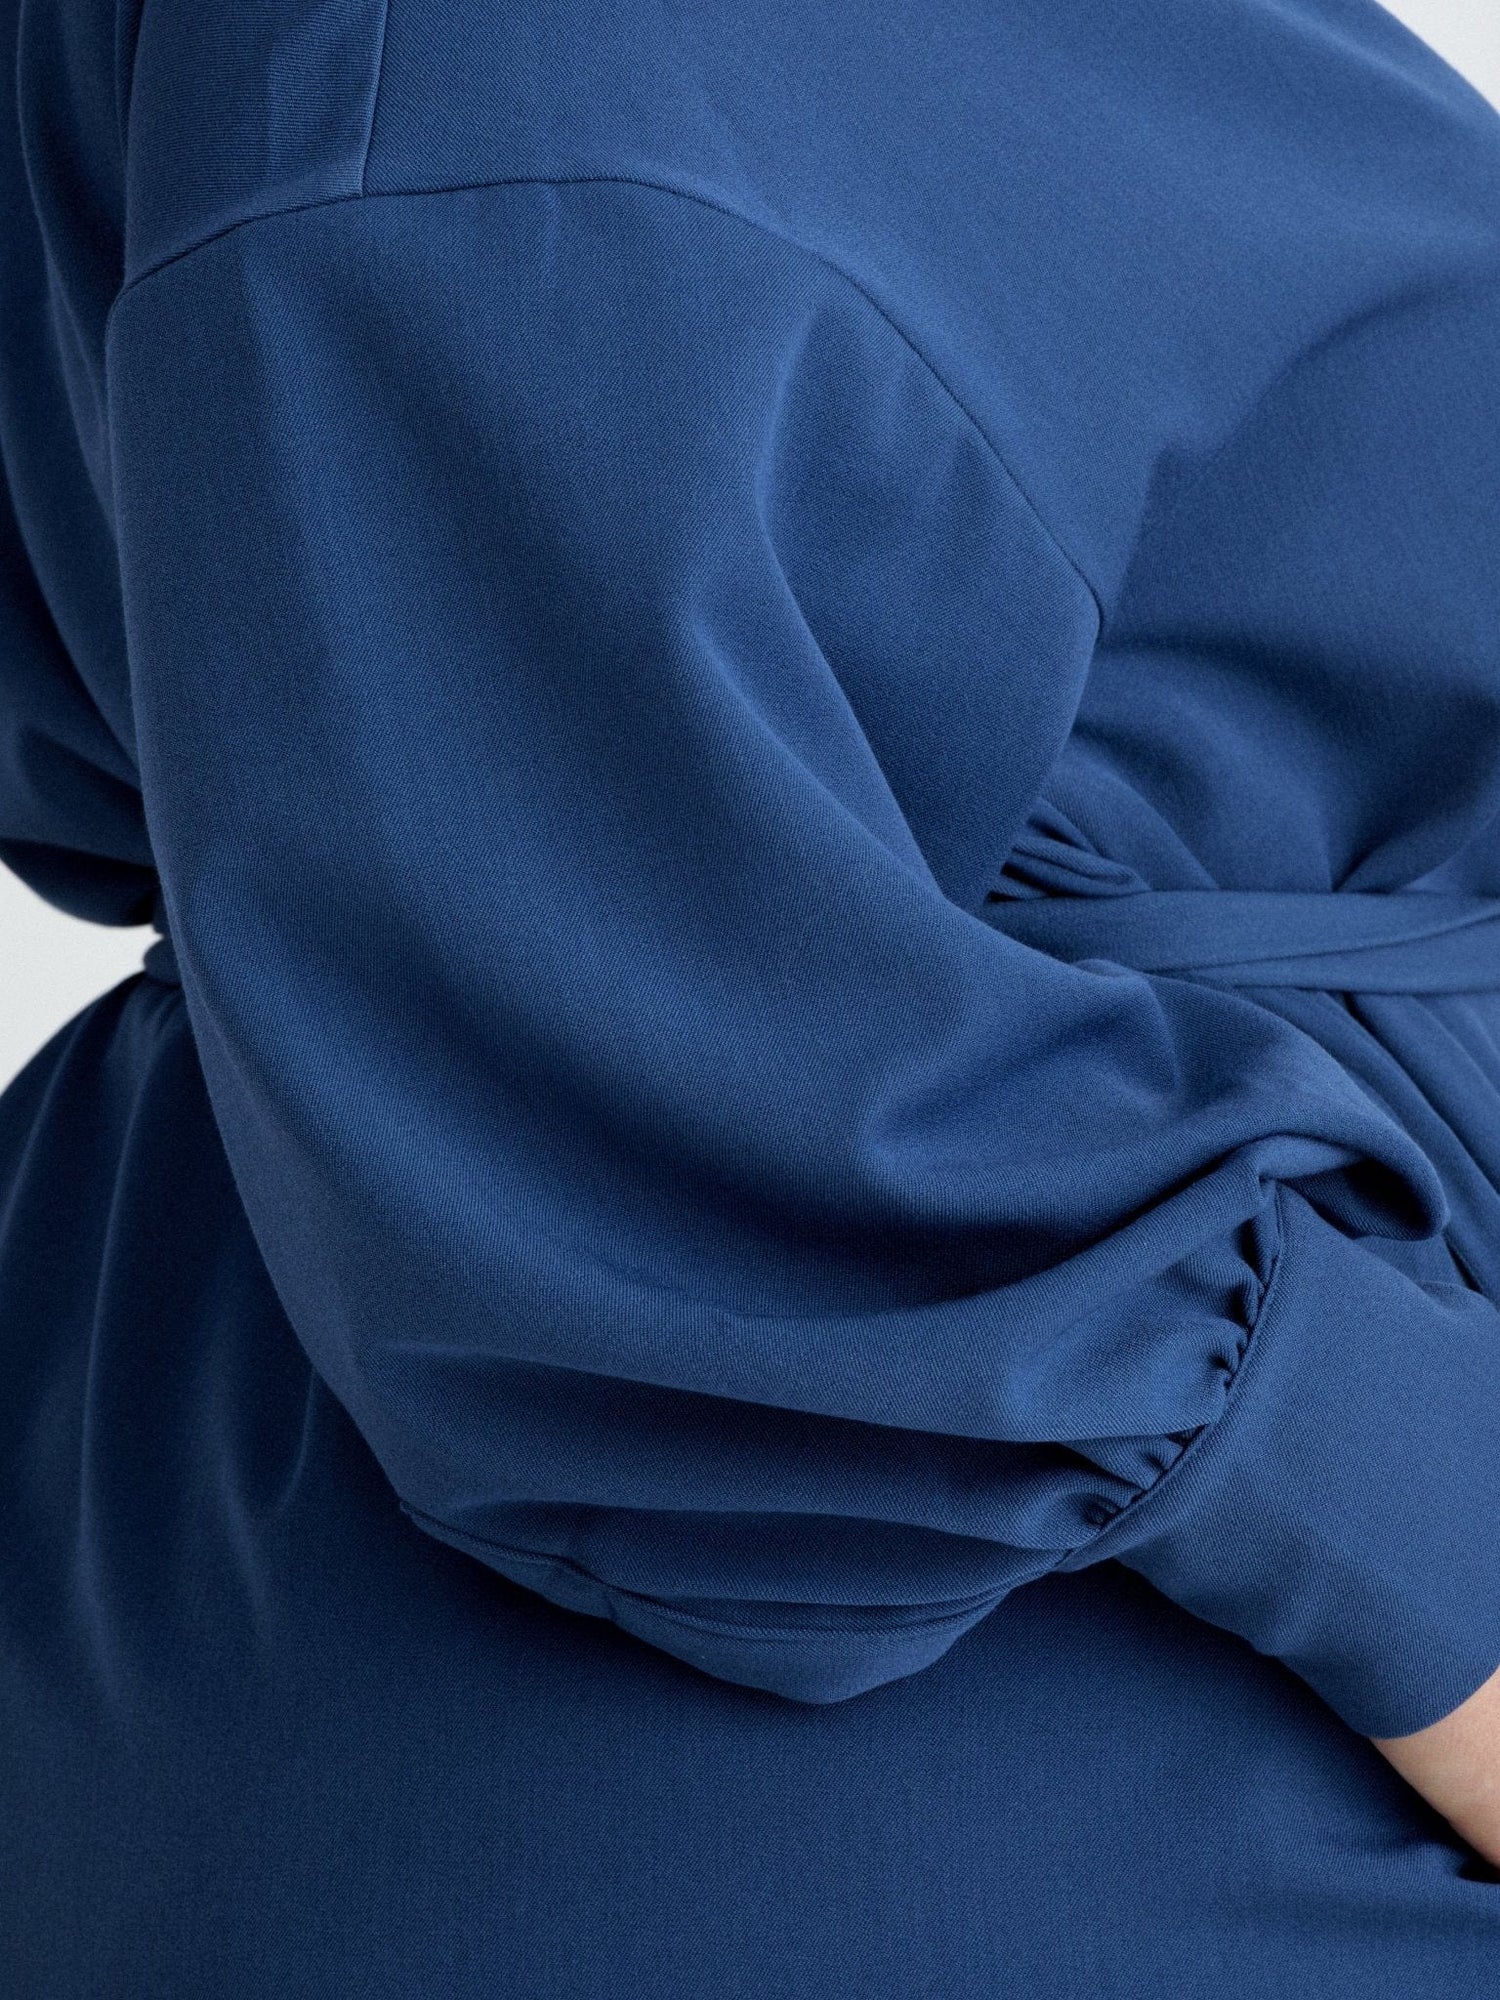 Les Militantes - Méganne robe bleu grande taille chic, tendance et de qualité made in France